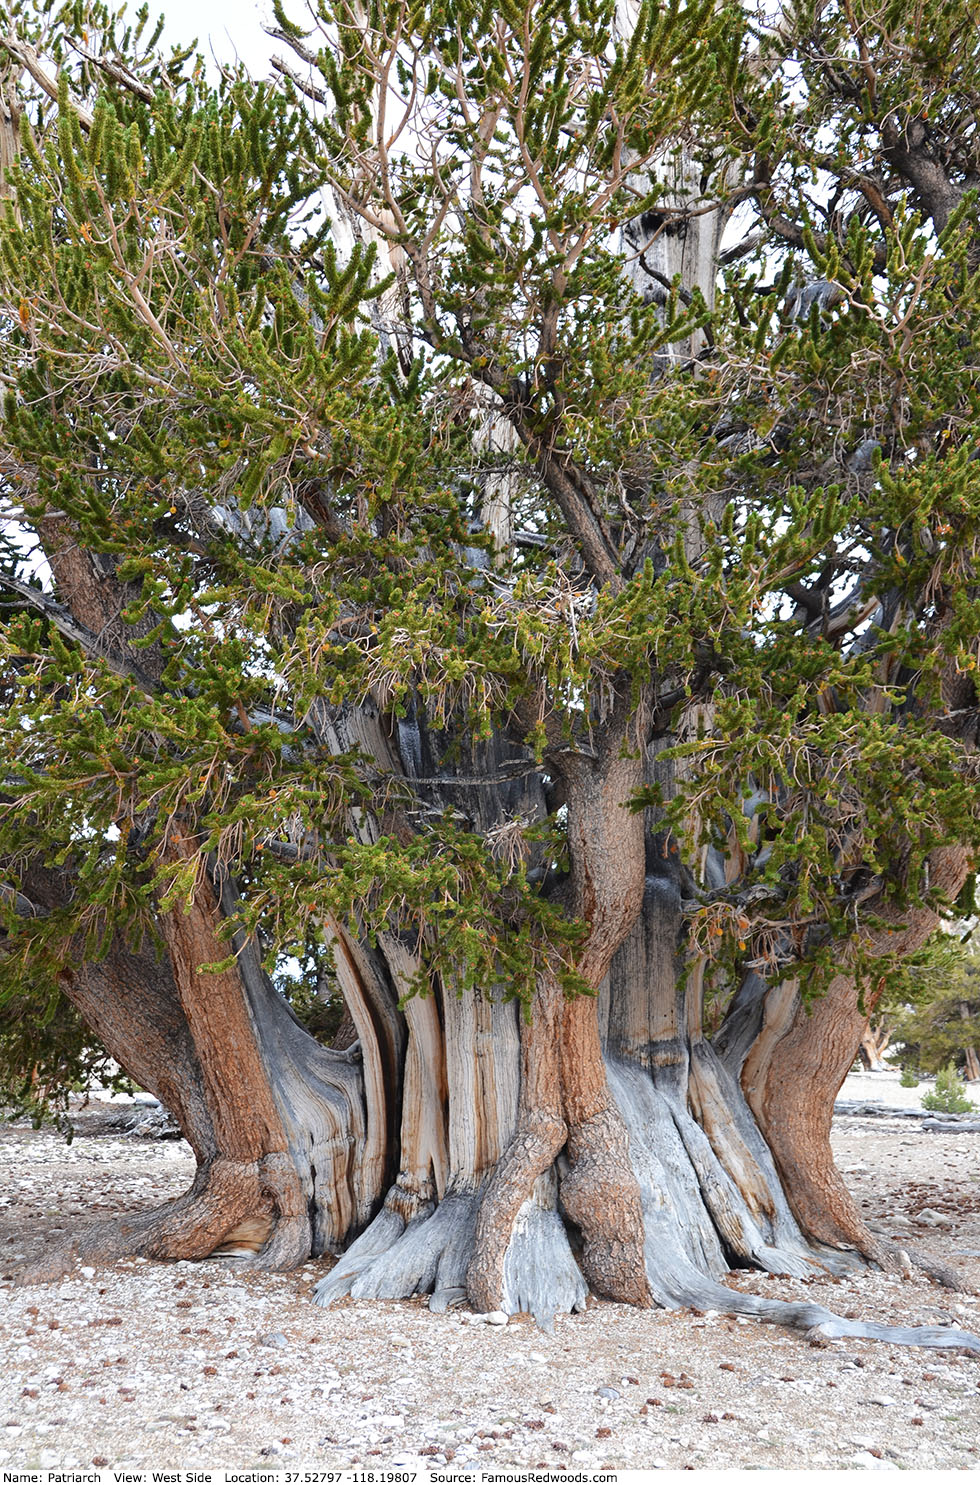 Patriarch Tree